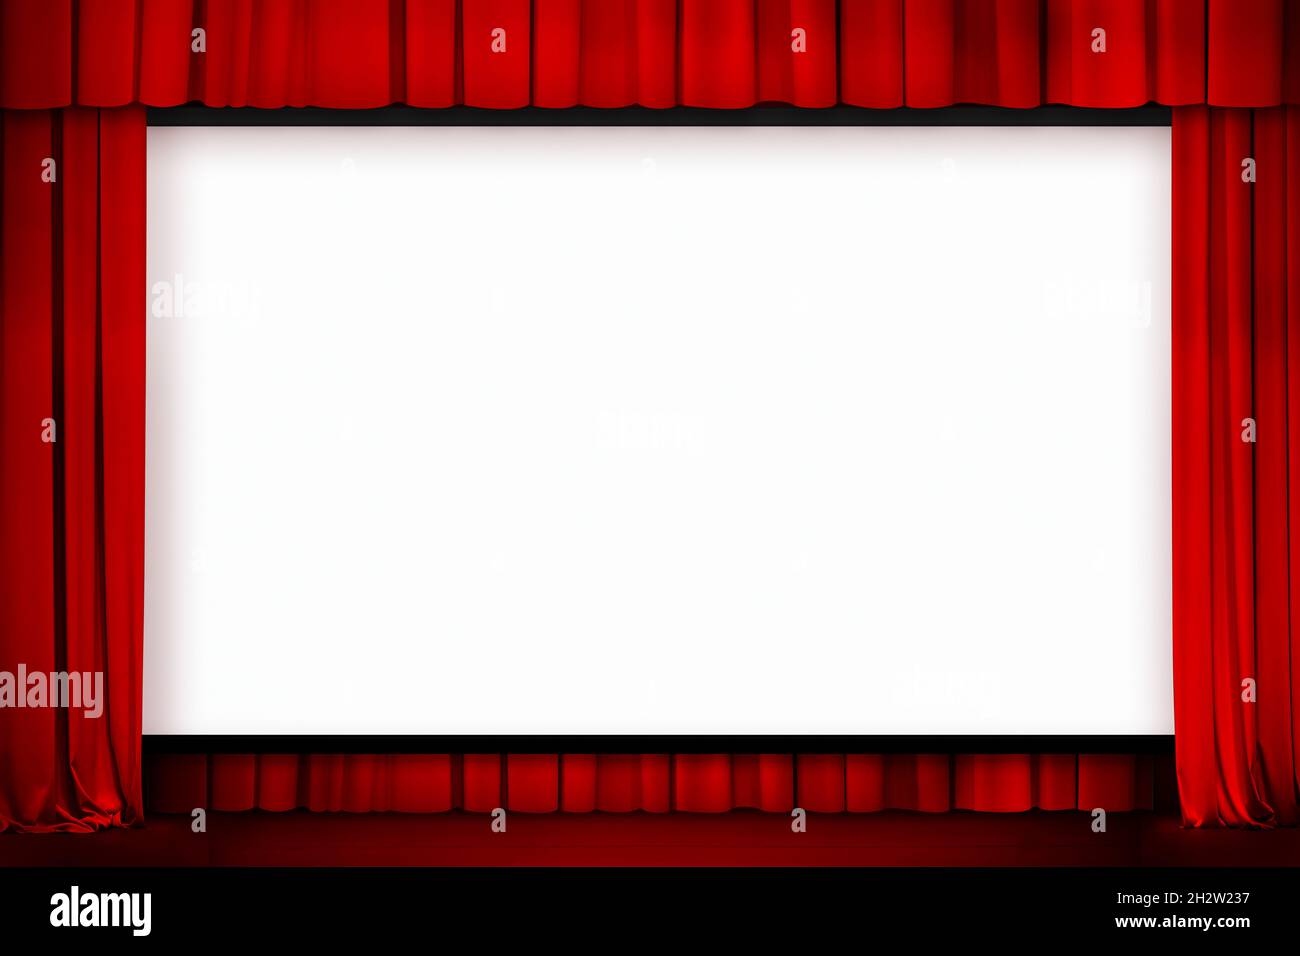 gran pantalla de cine con cortinas rojas Foto de stock